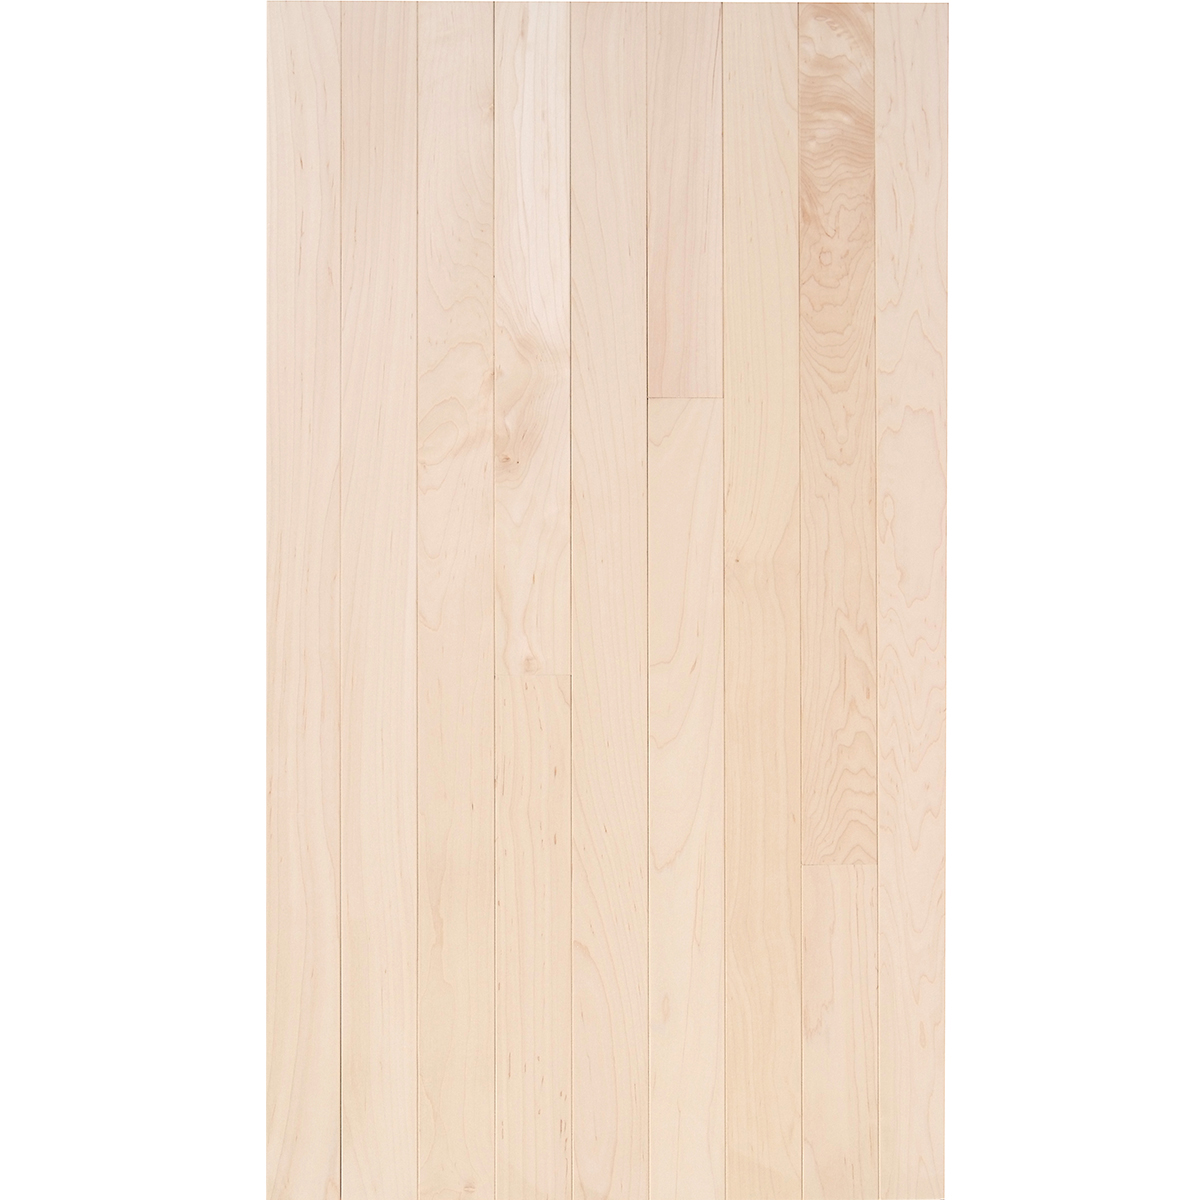 Hard Maple 3 4 X 2 1 Select Grade, 2 1 4 Unfinished Maple Hardwood Flooring